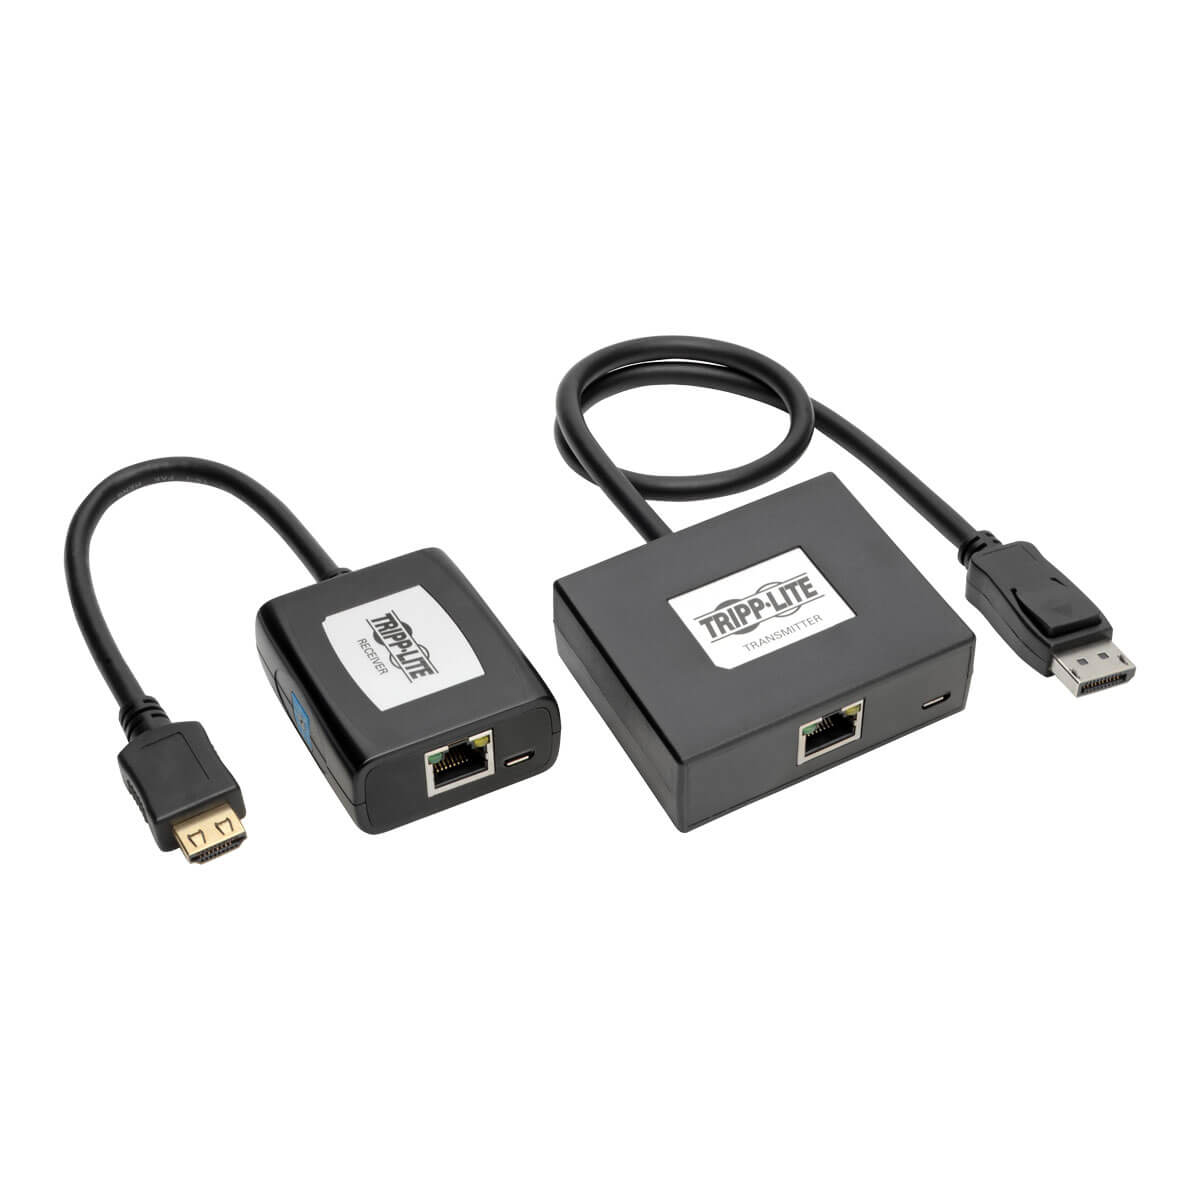 Tripp Lite B150-1A1-HDMI Juego Extensor Activo DisplayPort a HDMI sobre Cat5 y Cat6, Transmisor y Receptor Pigtail para Audio y Video, 45.7 m